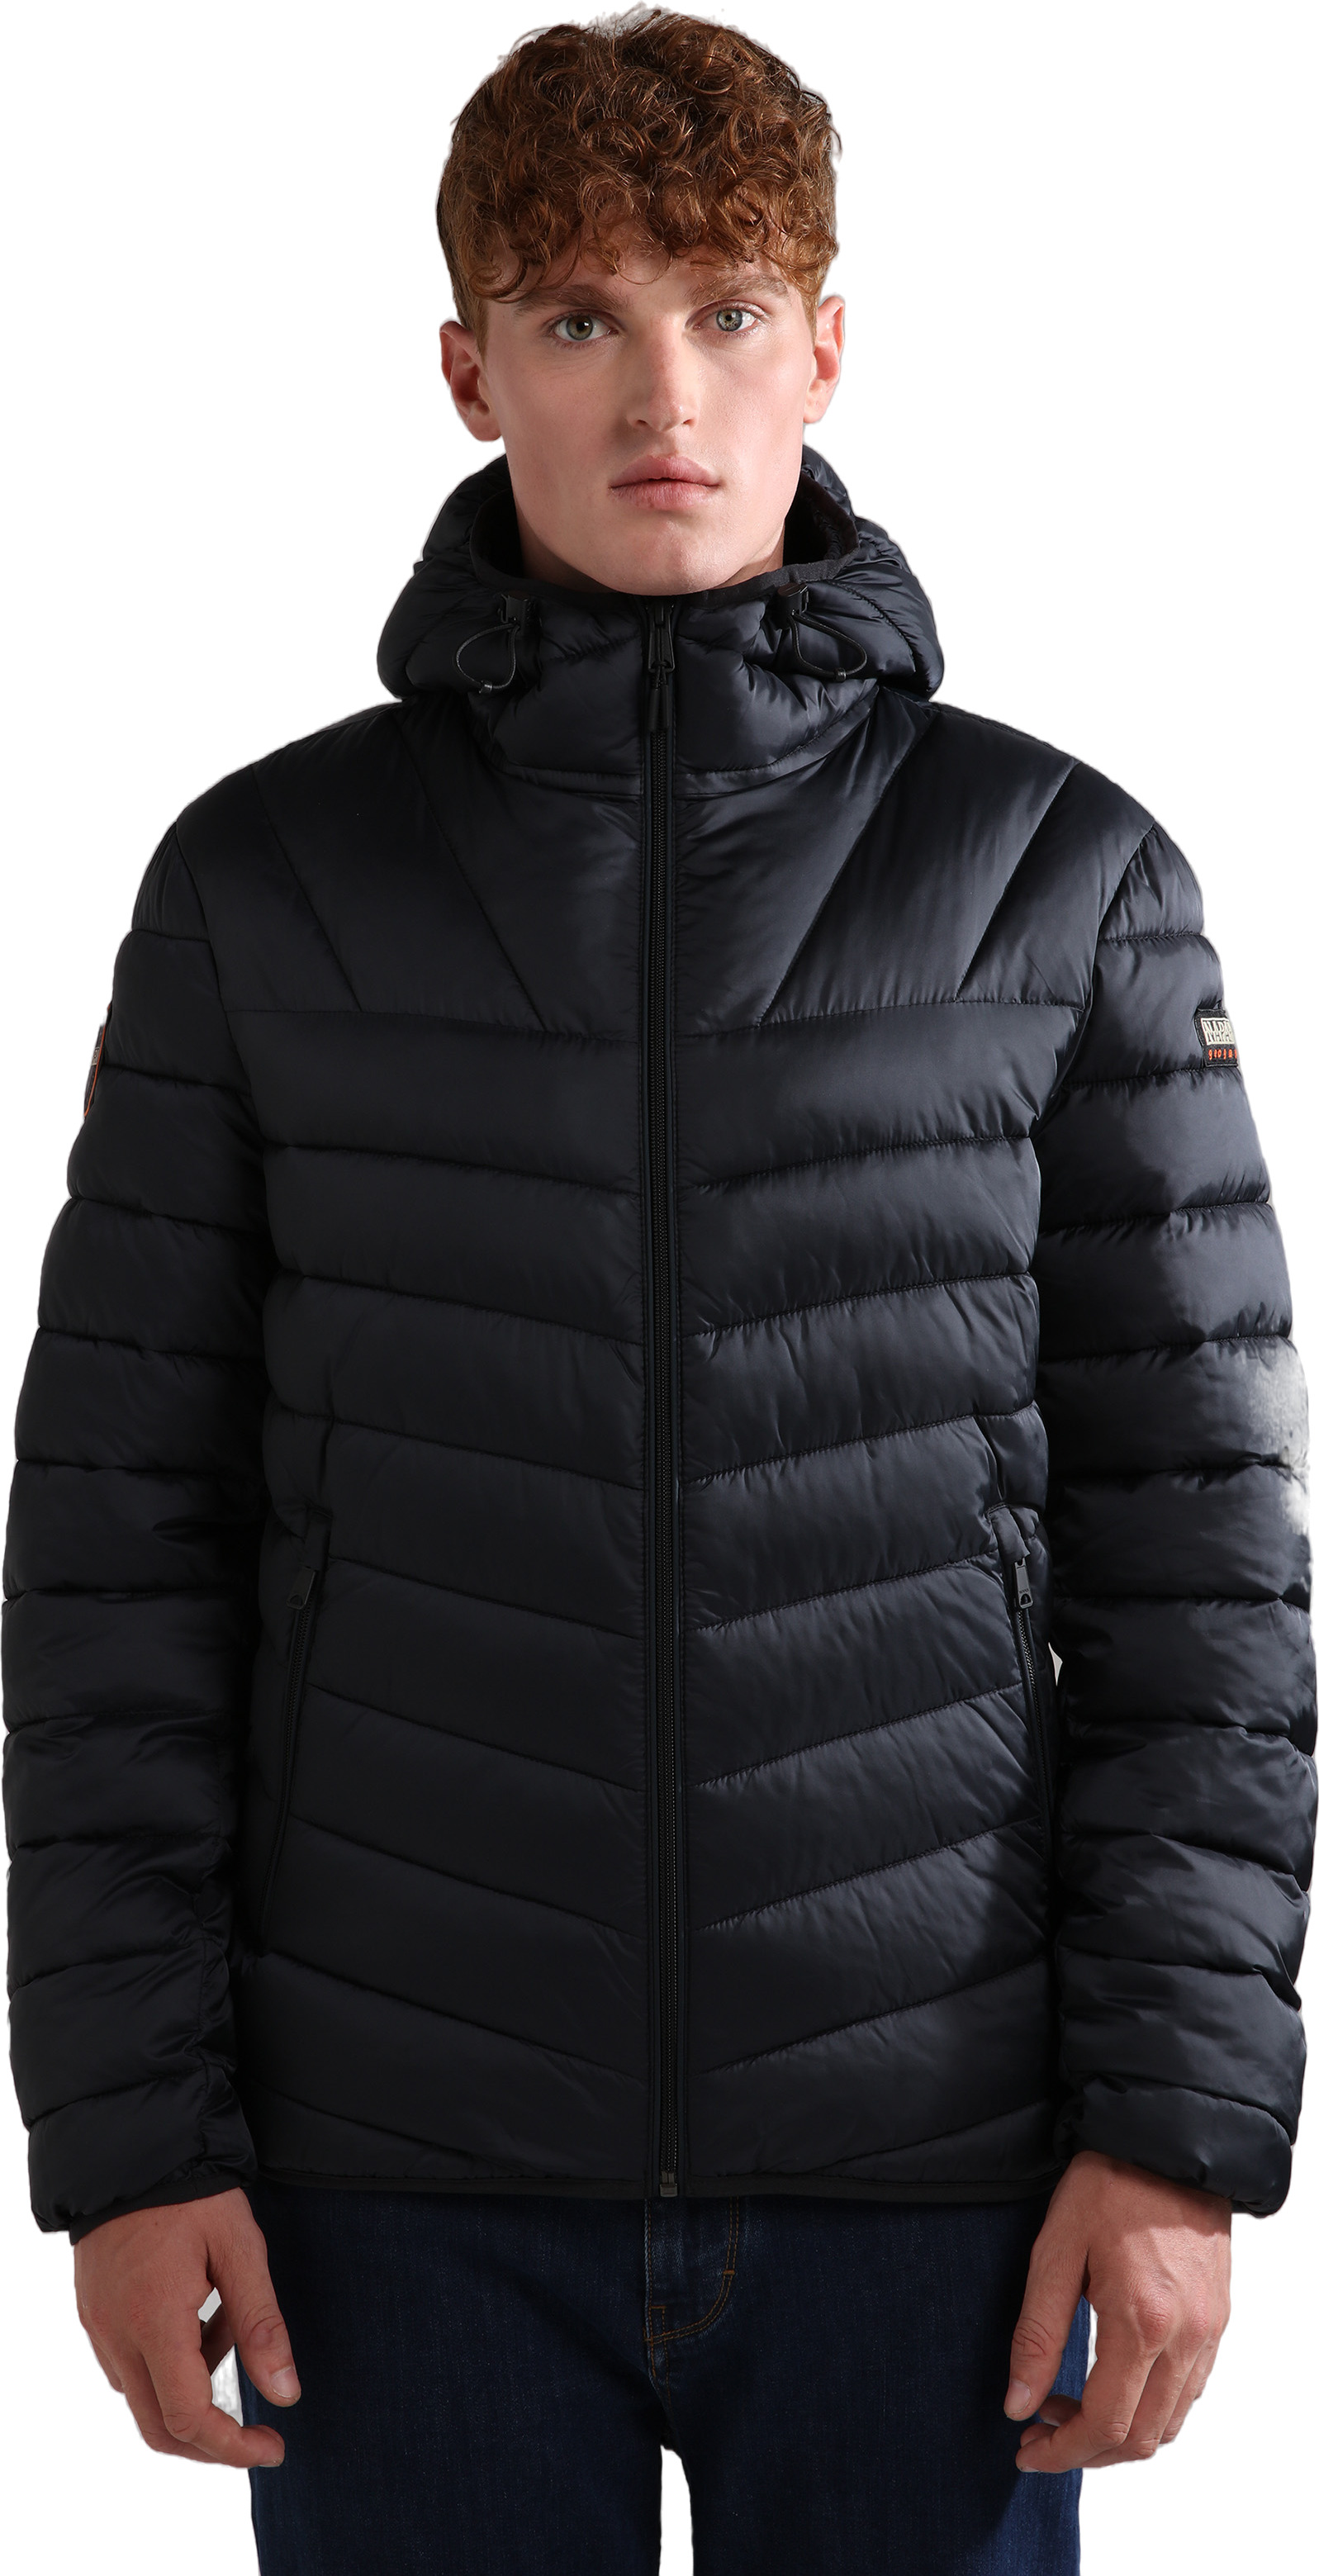 Куртка мужская Napapijri Aerons H 3 041 черная 2XL